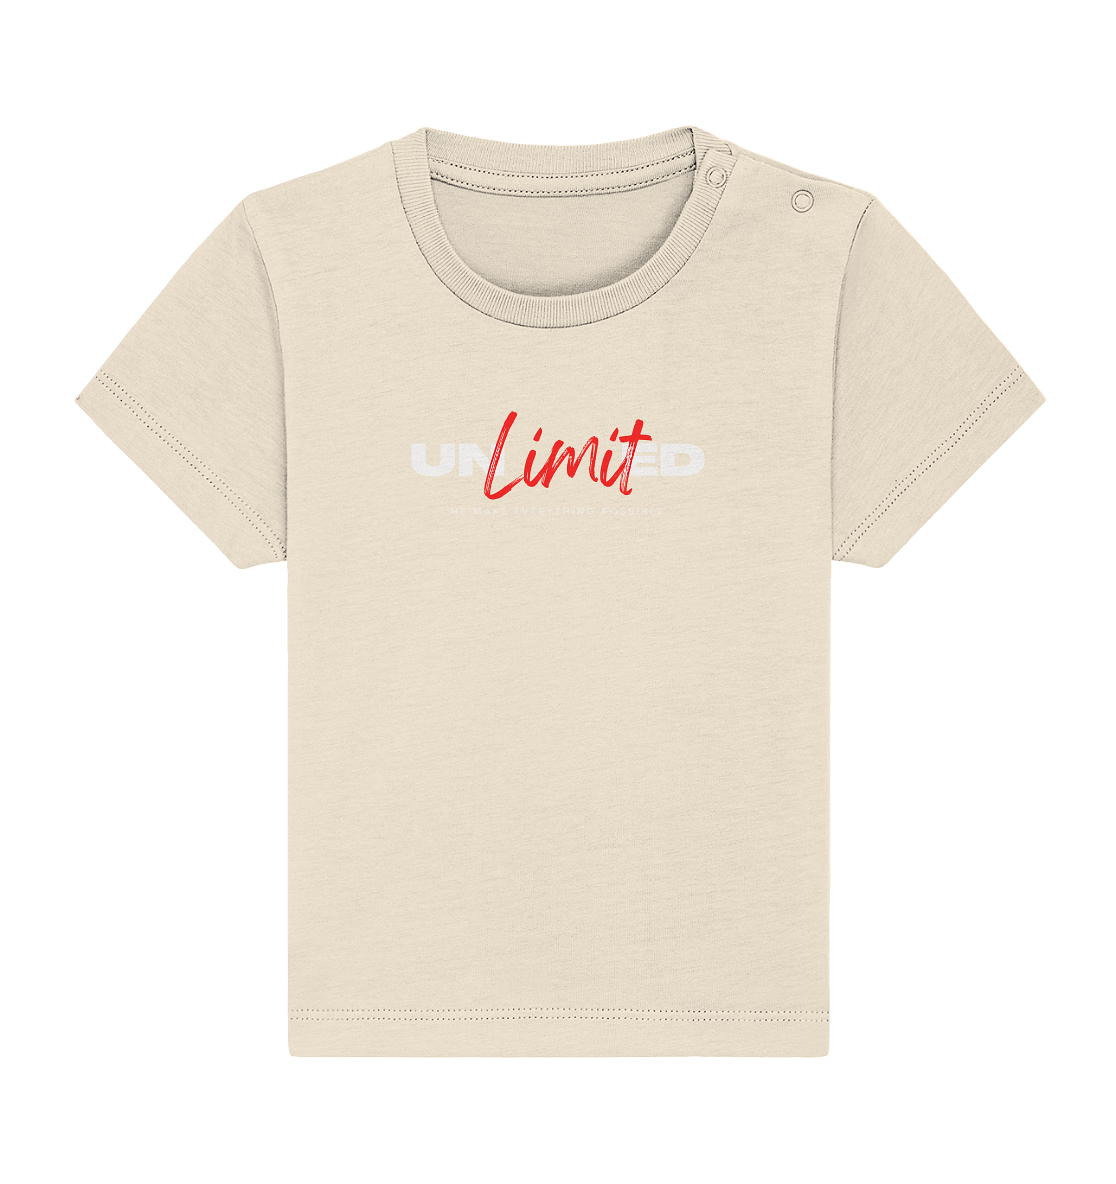 Unbegrenzte Möglichkeiten "Unlimited" - Baby Organic Shirt